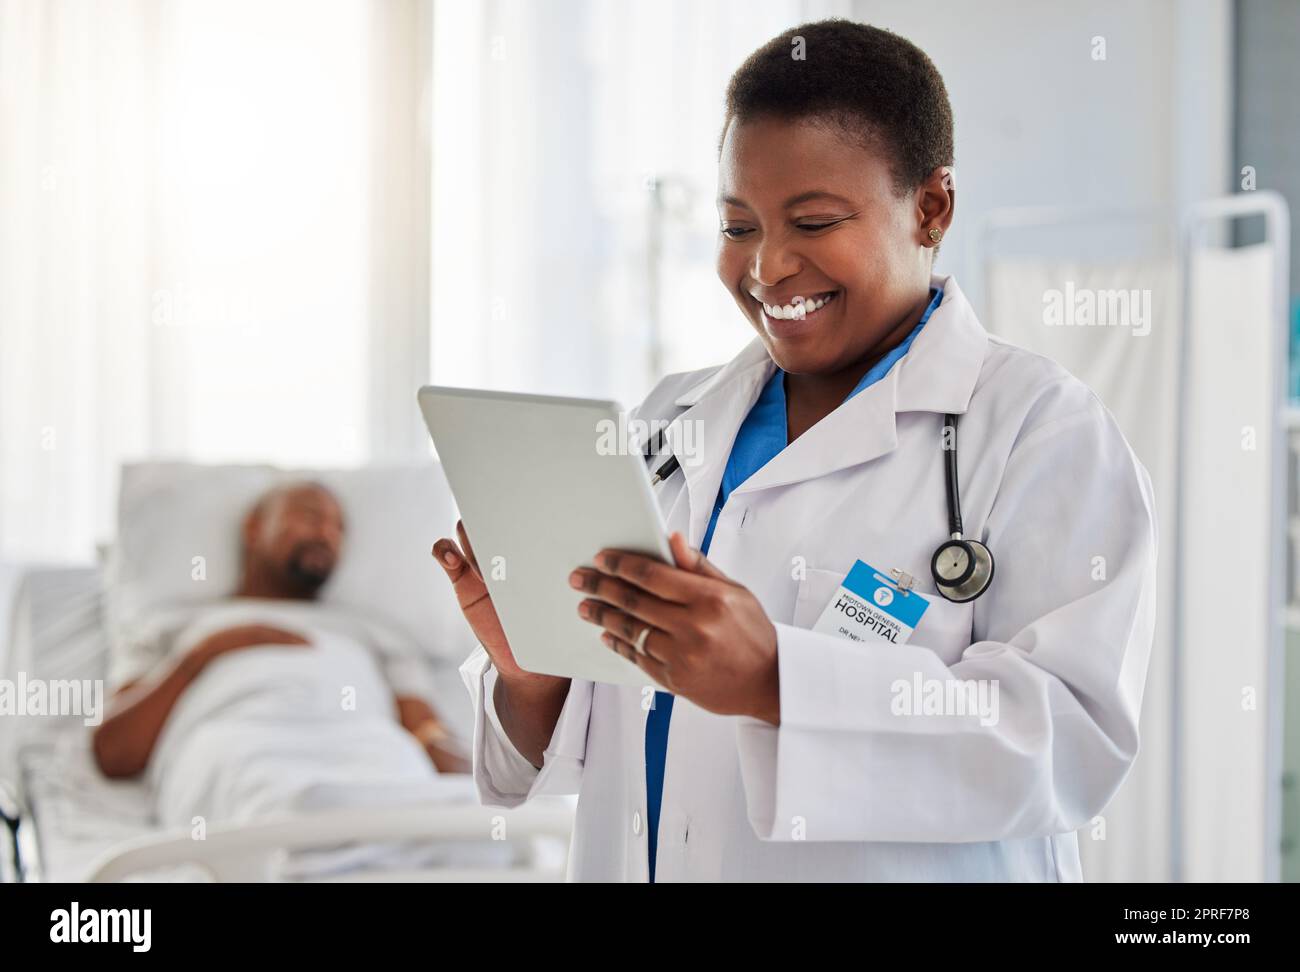 Bonne nouvelle avec un médecin lisant un e-mail ou des résultats de tests sur une tablette numérique, se sentant positif à l'hôpital. Une jeune travailleuse de la santé obtient de bonnes nouvelles de guérison ou de traitement pour sa patiente malade Banque D'Images